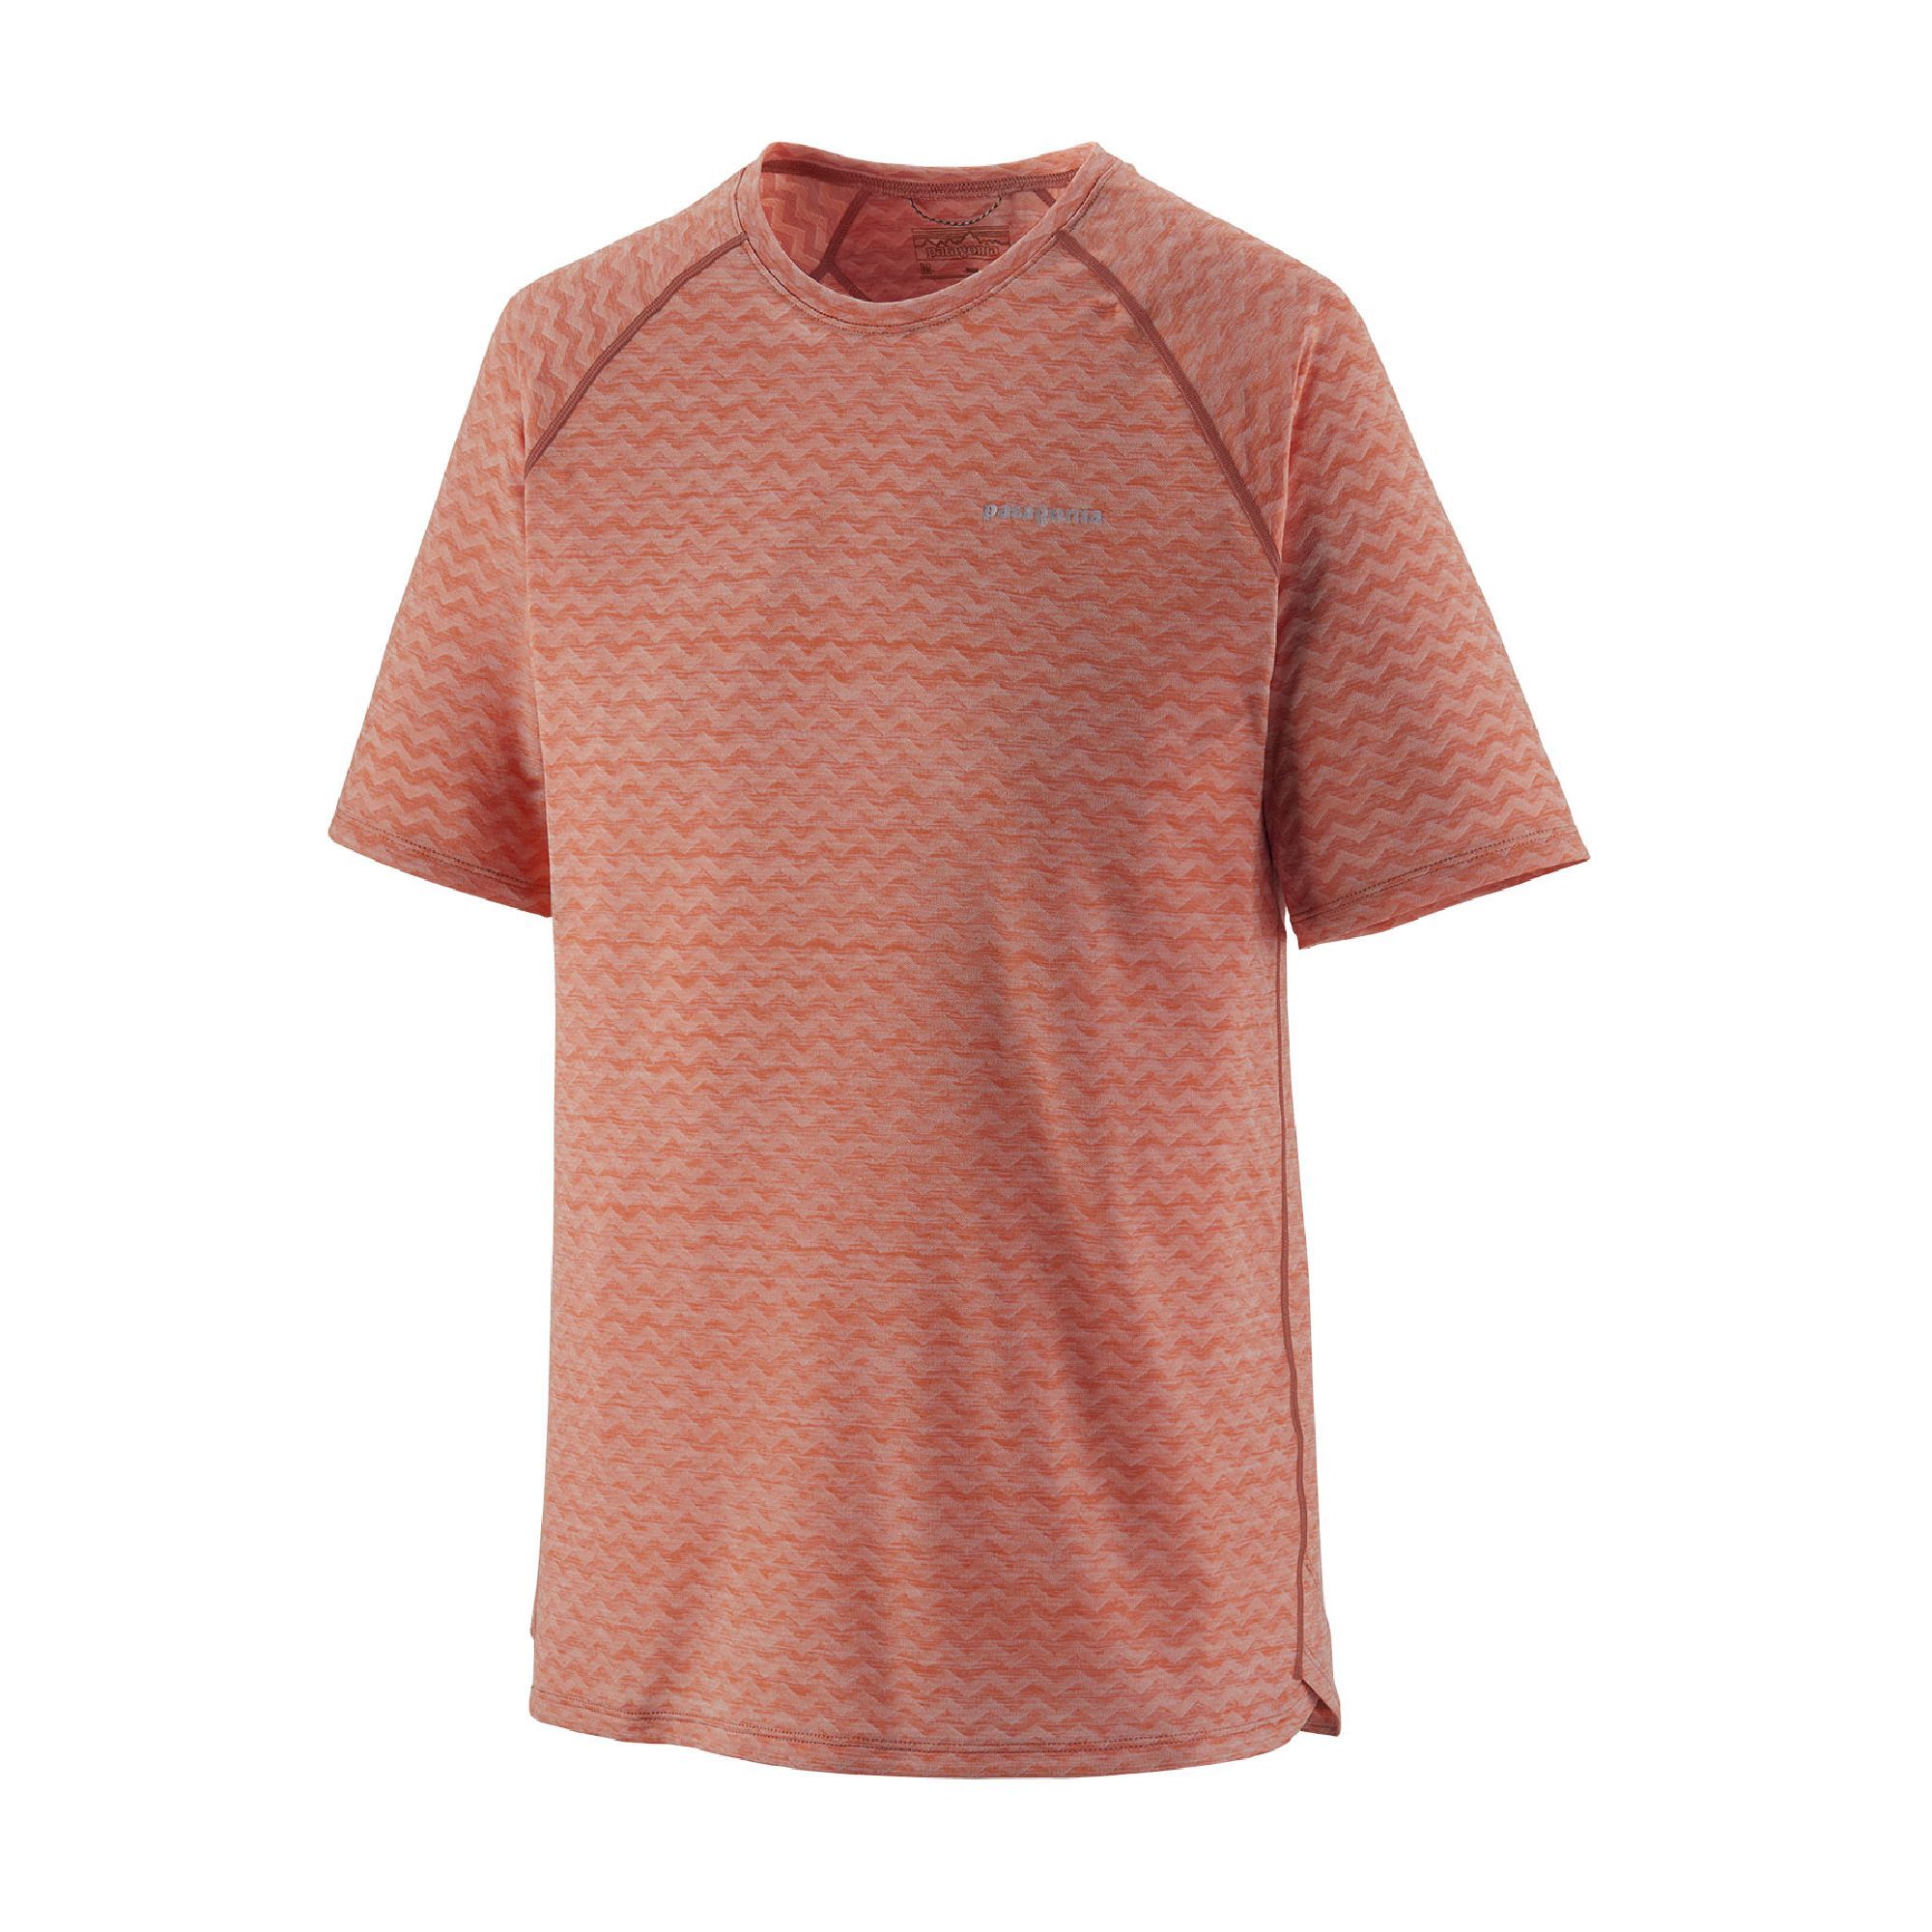 Patagonia Ridge Flow Shirt - T-shirt - Men's